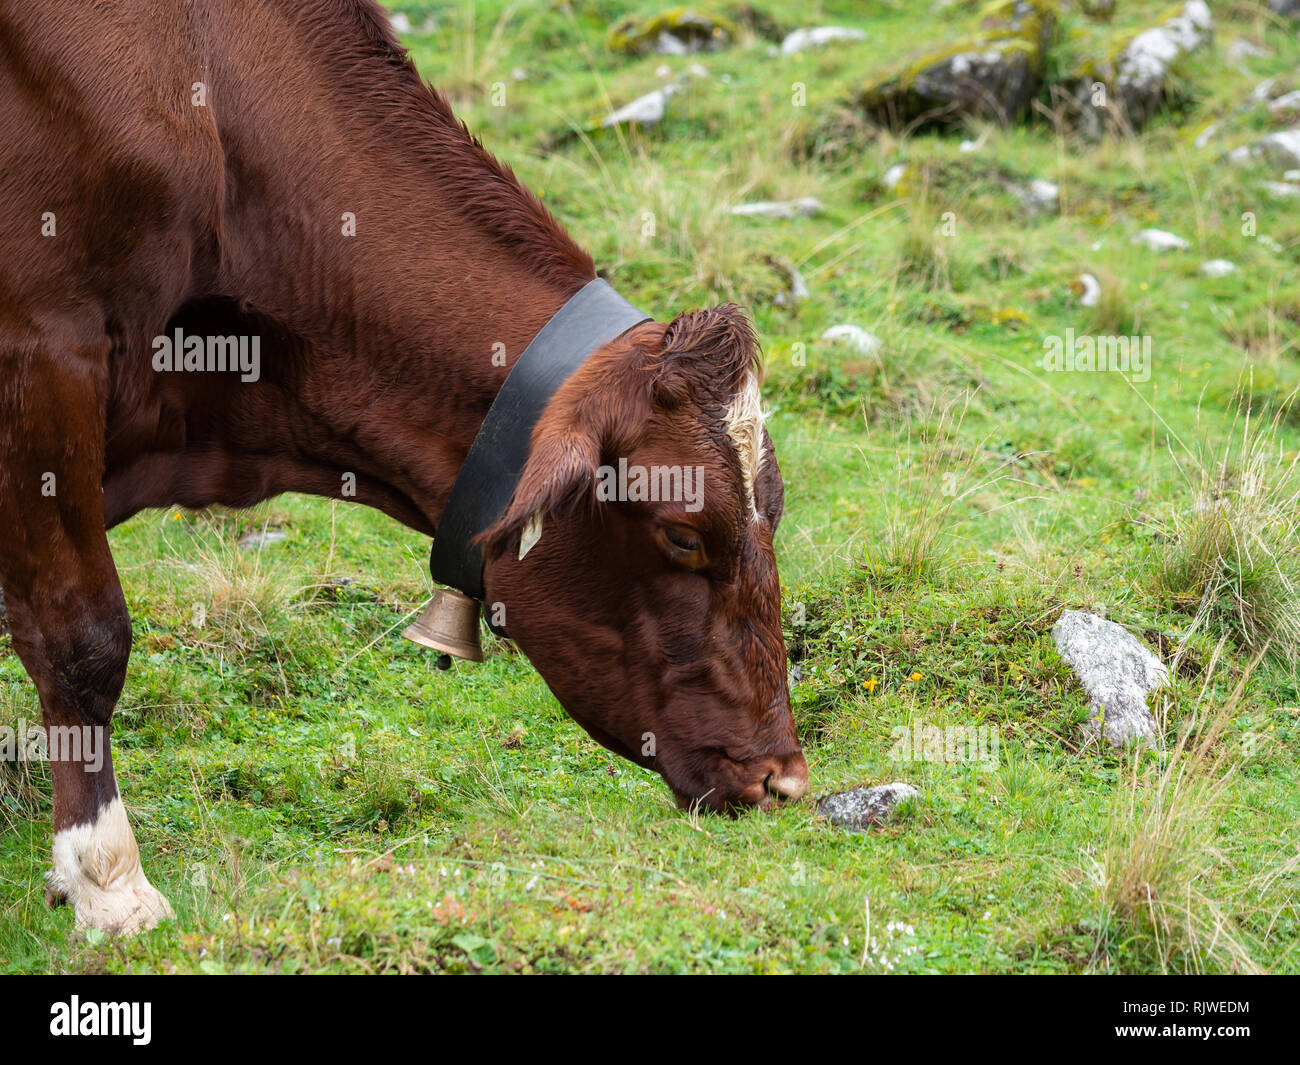 Milk cow on pasture Stock Photo